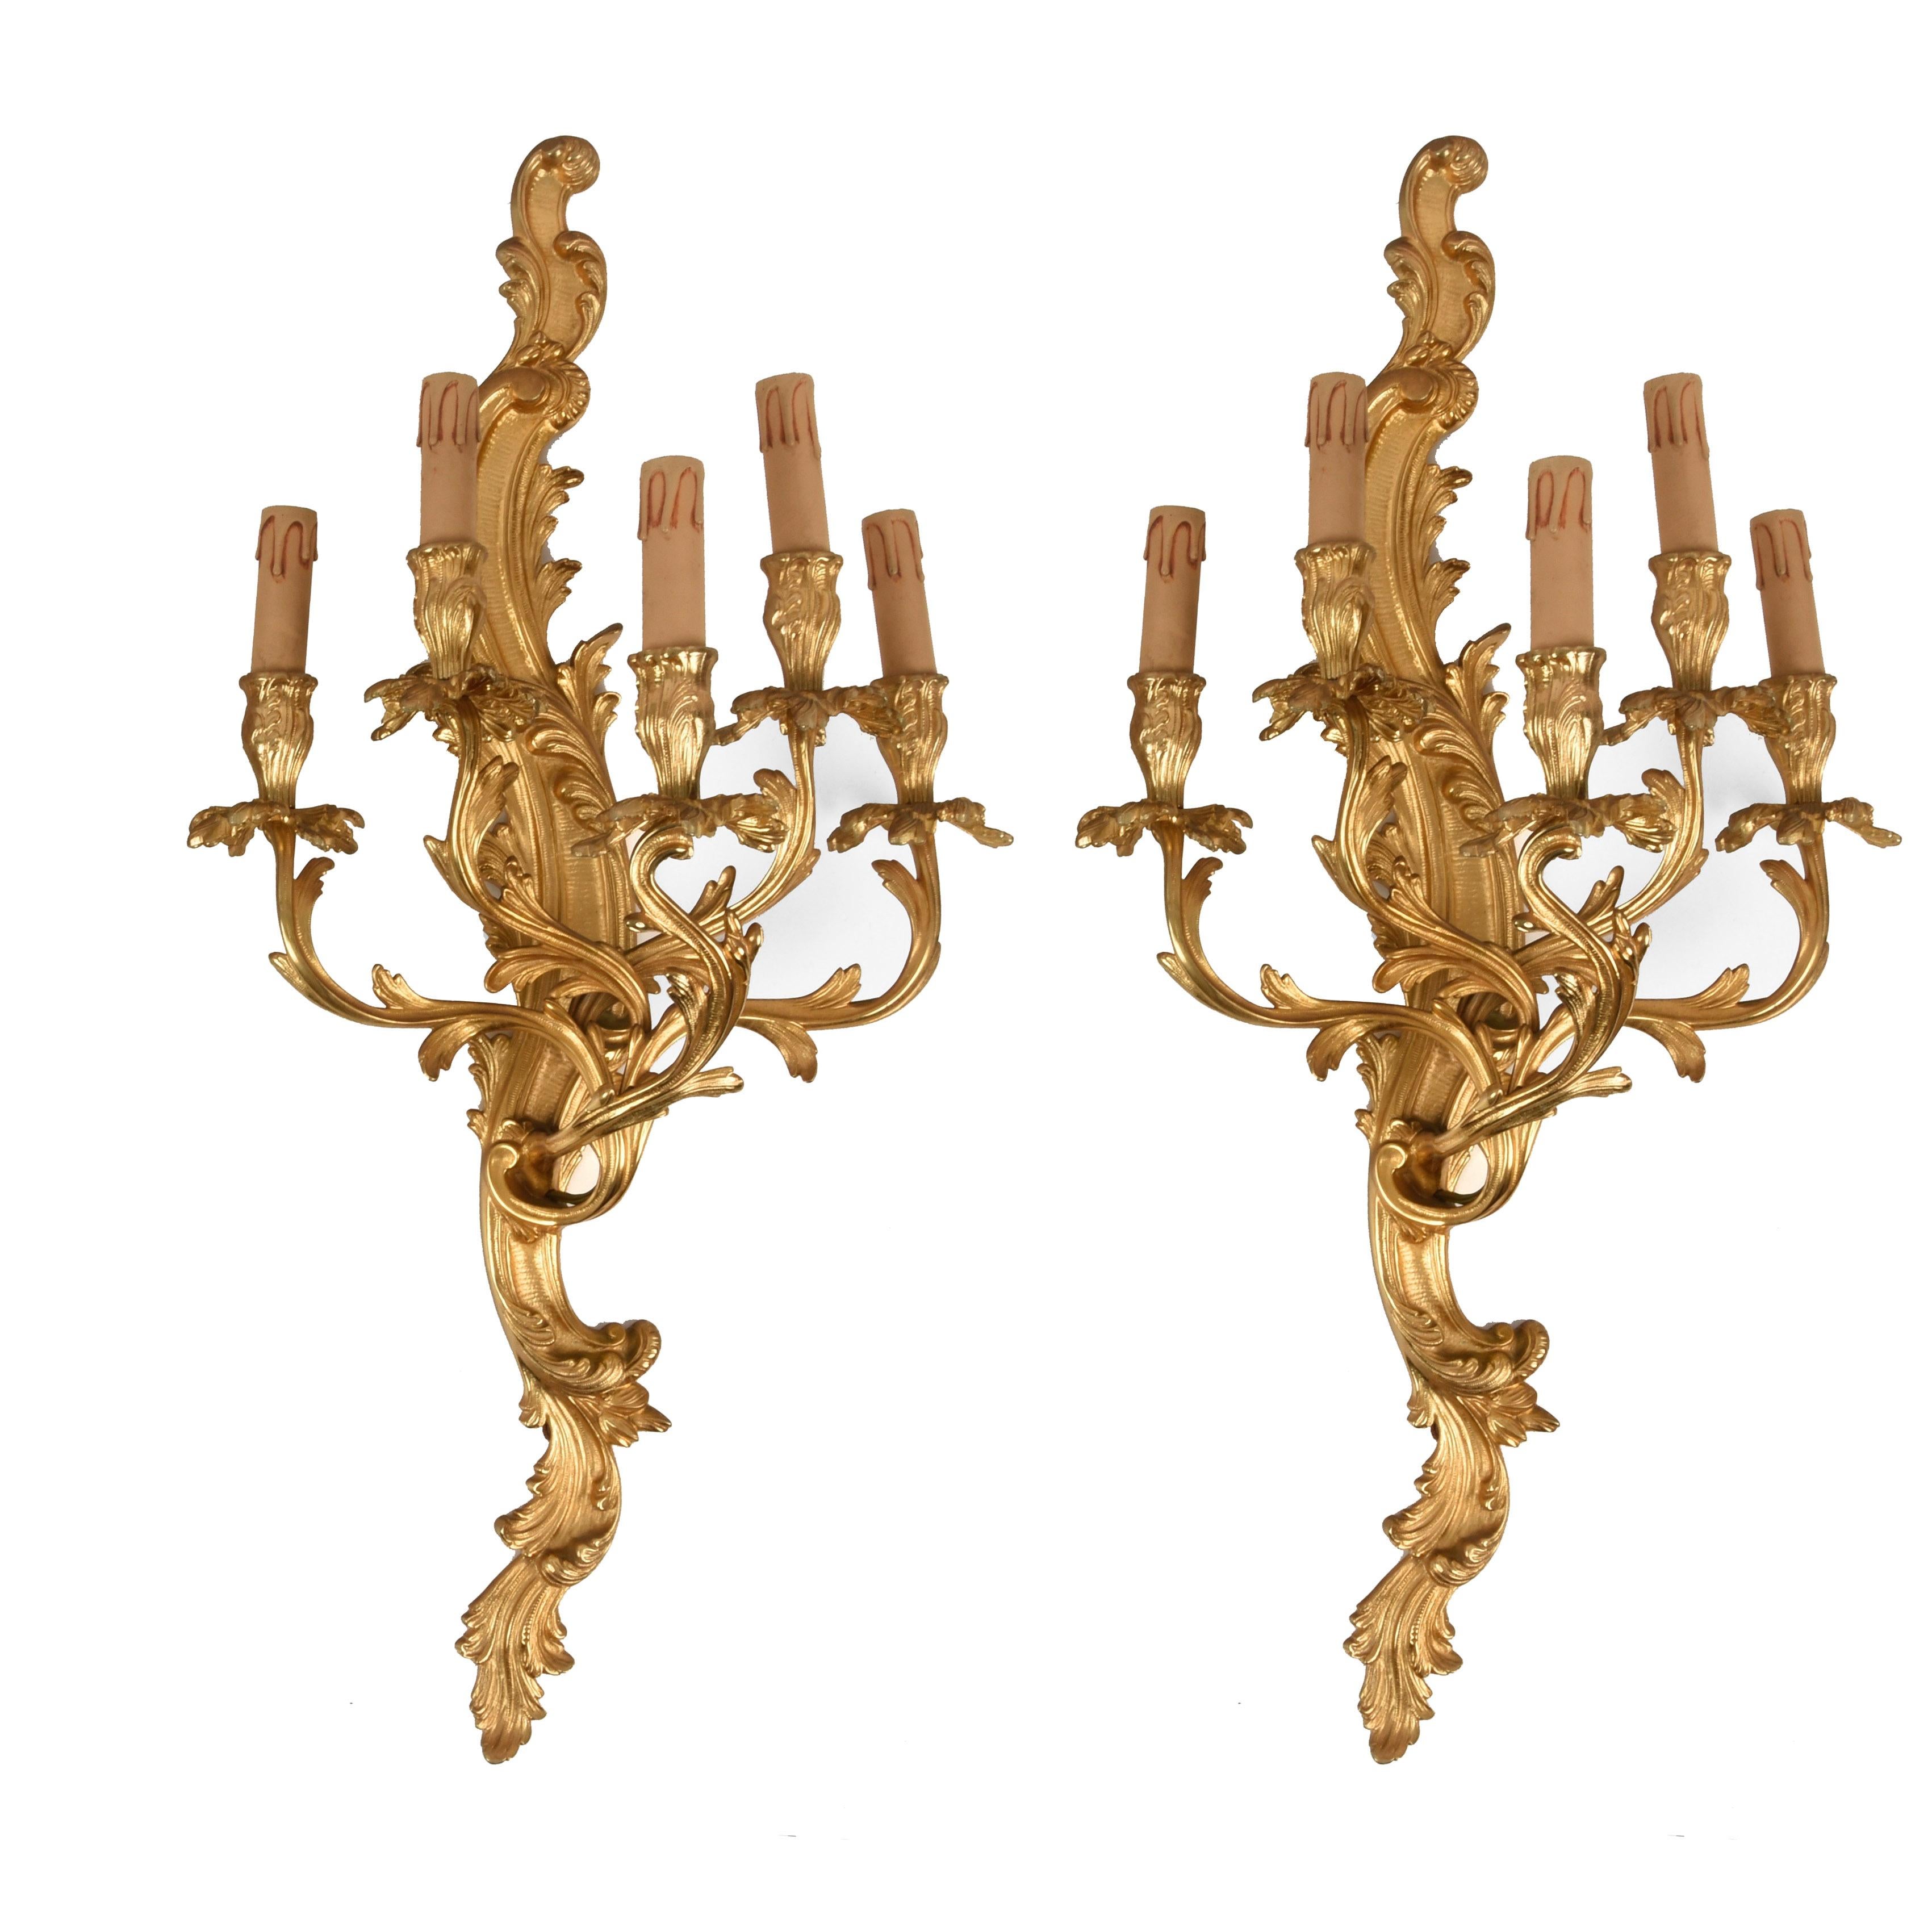 Somptueuse et grande paire d'appliques à 5 lumières en bronze doré. Ce fantastique ensemble a été fabriqué au début du XXe siècle dans le style Louis XV en France.

Cette paire luxueuse est décorée de feuilles d'acanthe et d'un thème floral avec